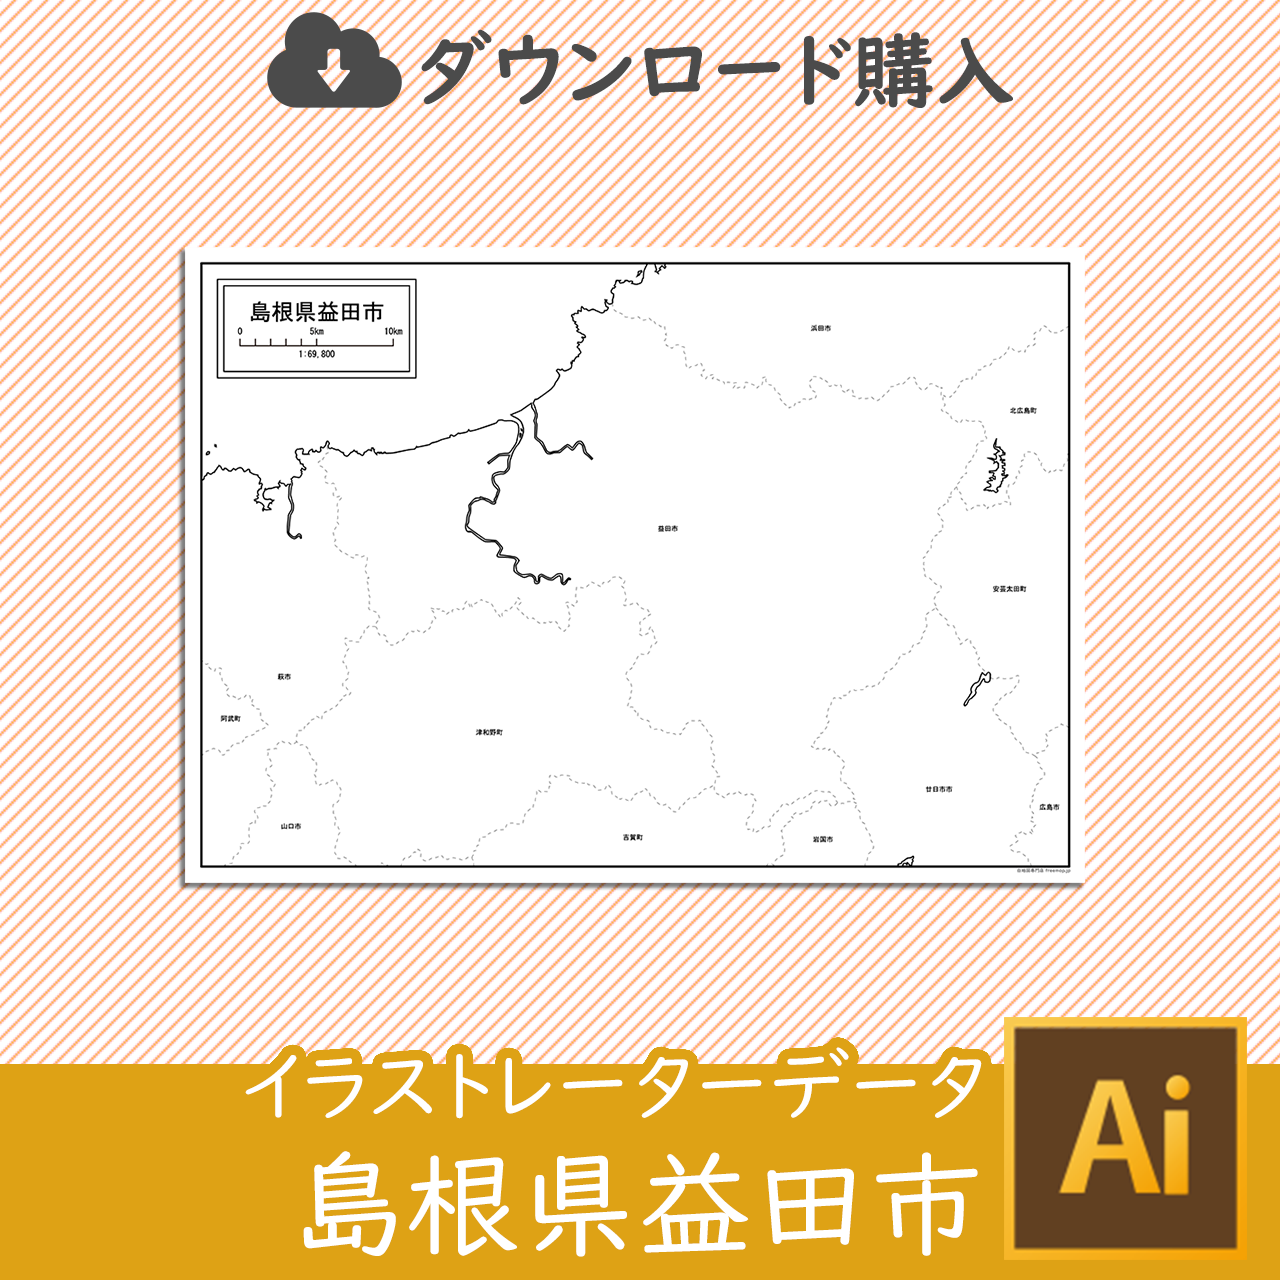 益田市のaiデータのサムネイル画像